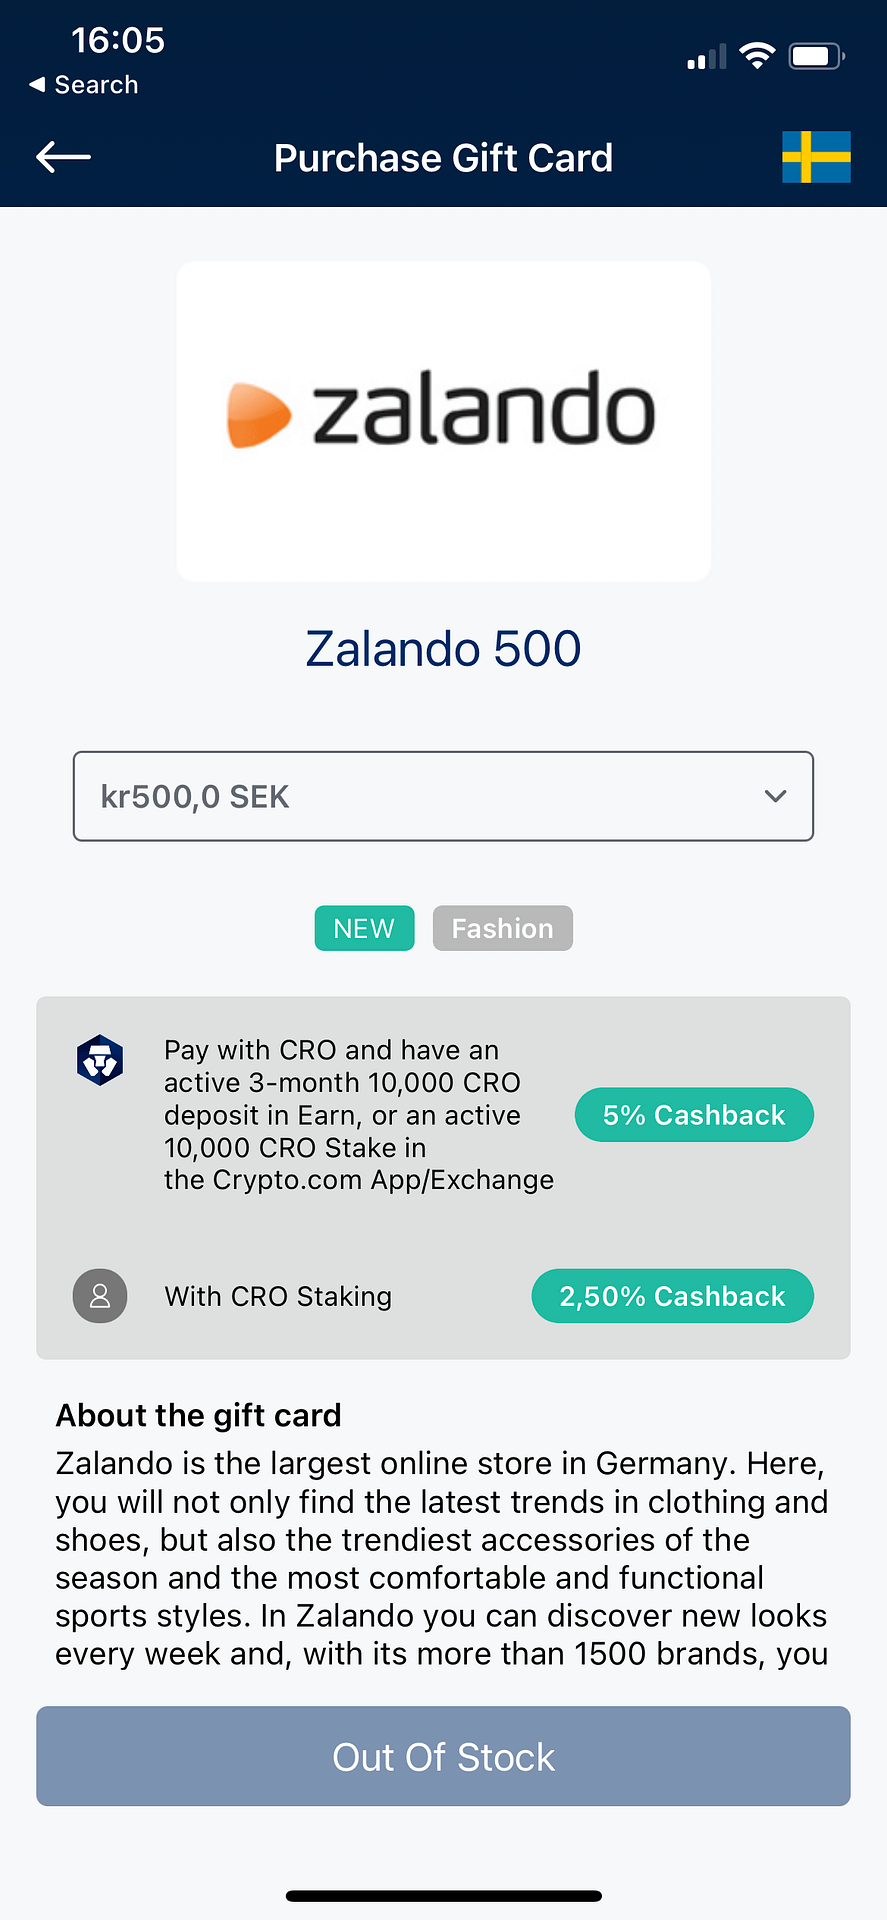 Zalando Crypto.com Gift Card Cash Back